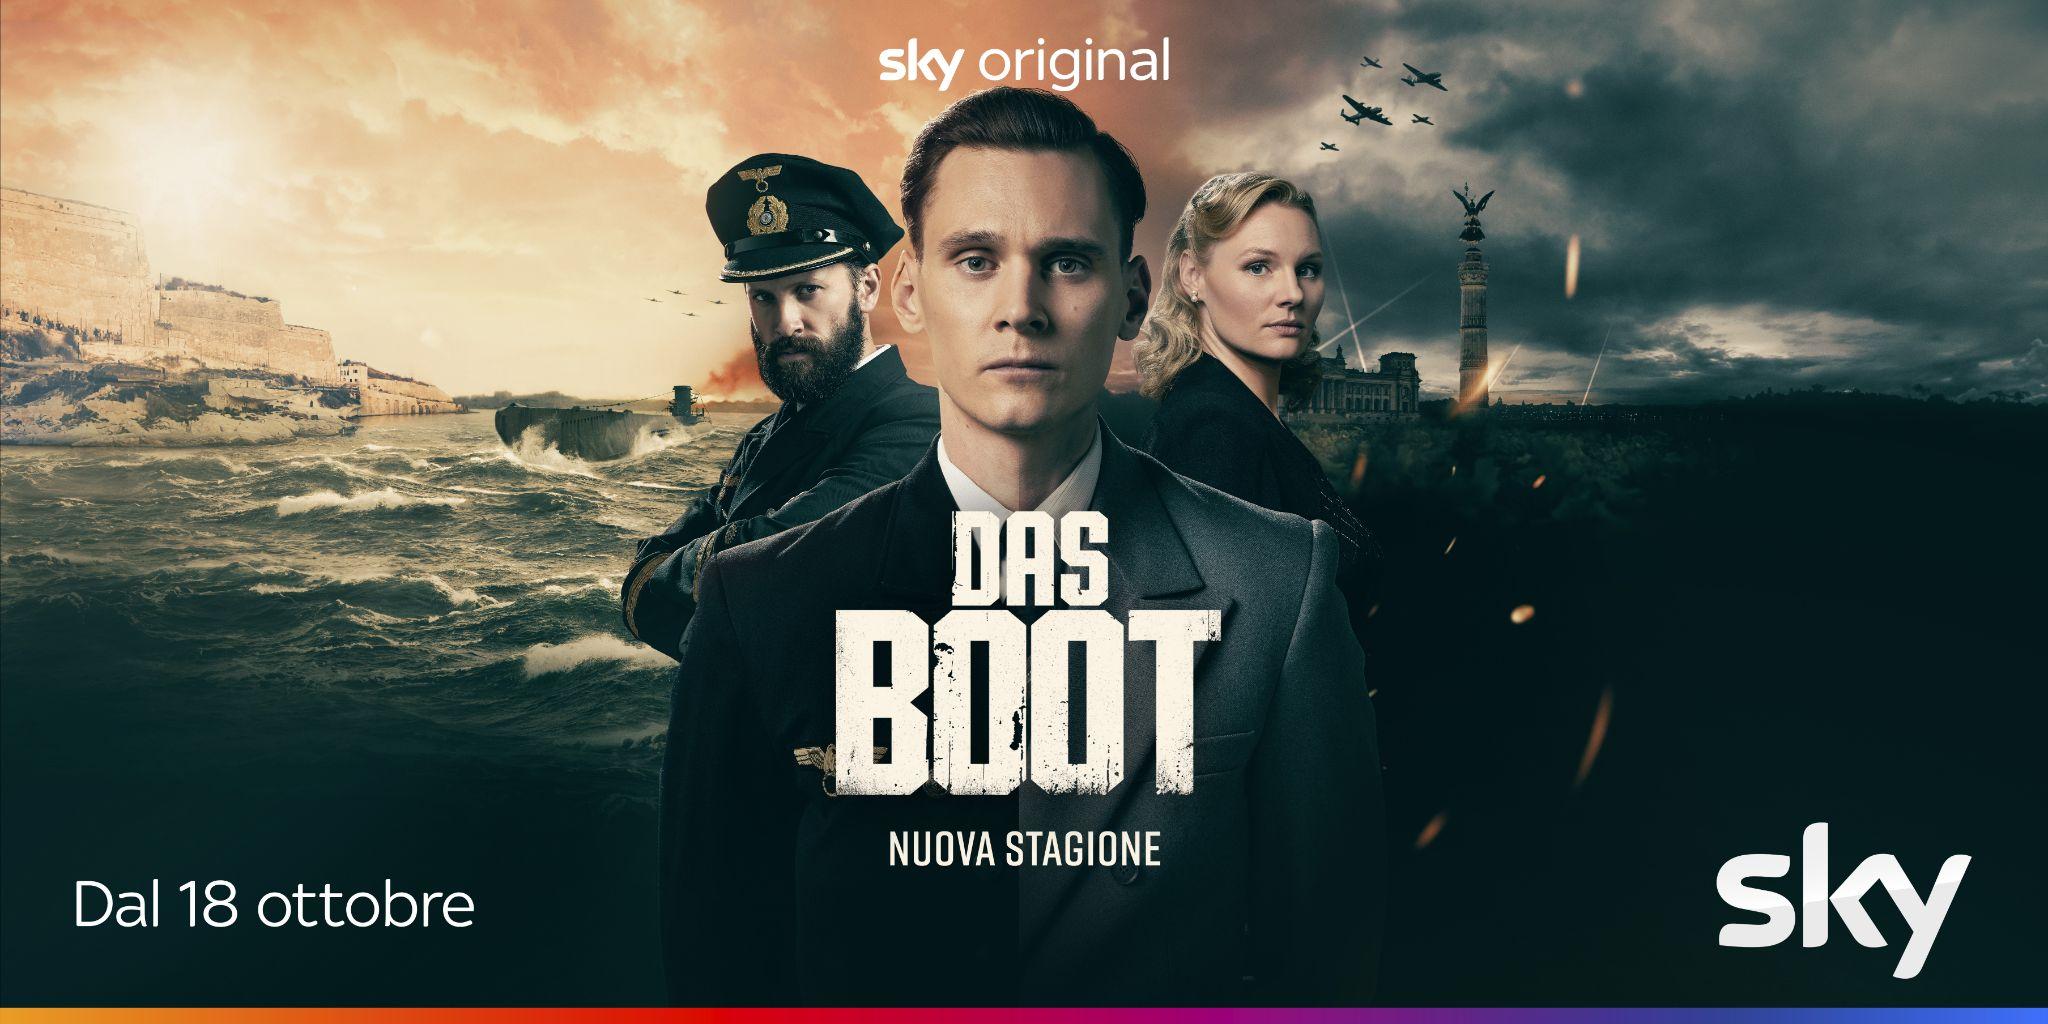 Das Boot, il trailer della nuova stagione del dramma storico Sky Original